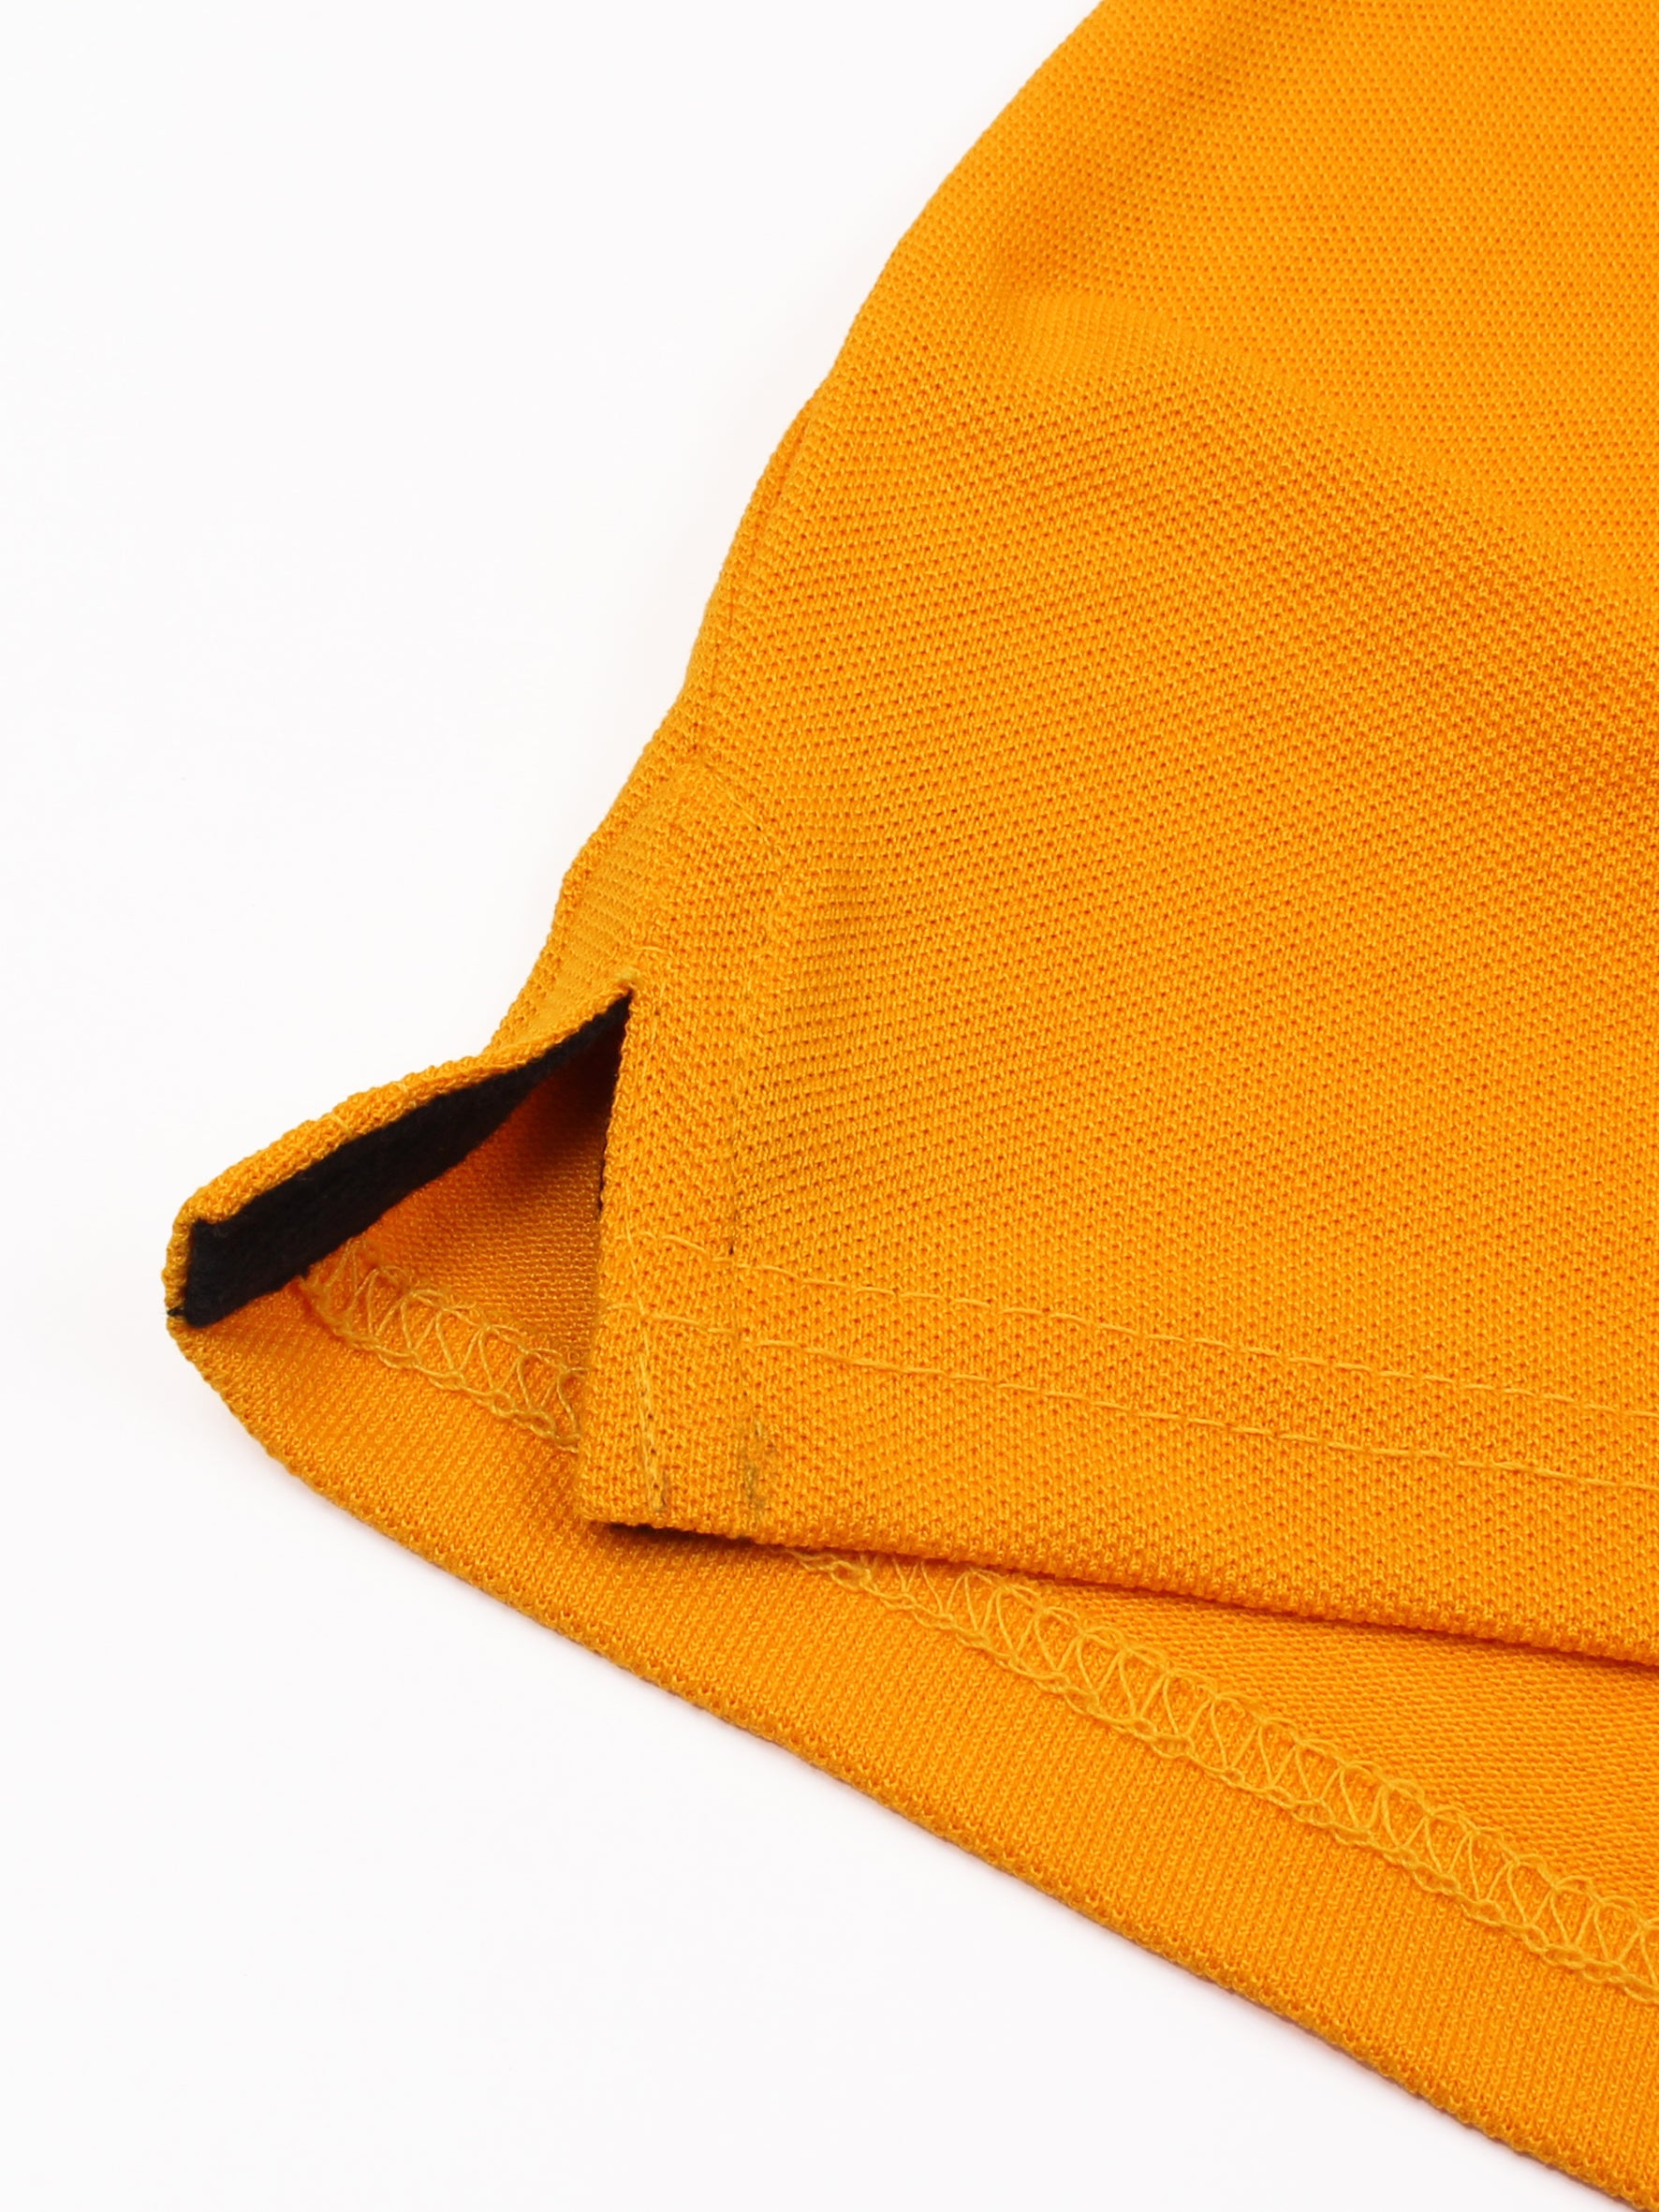 Tipping Collar Polo Shirt For Boys plain Yellow